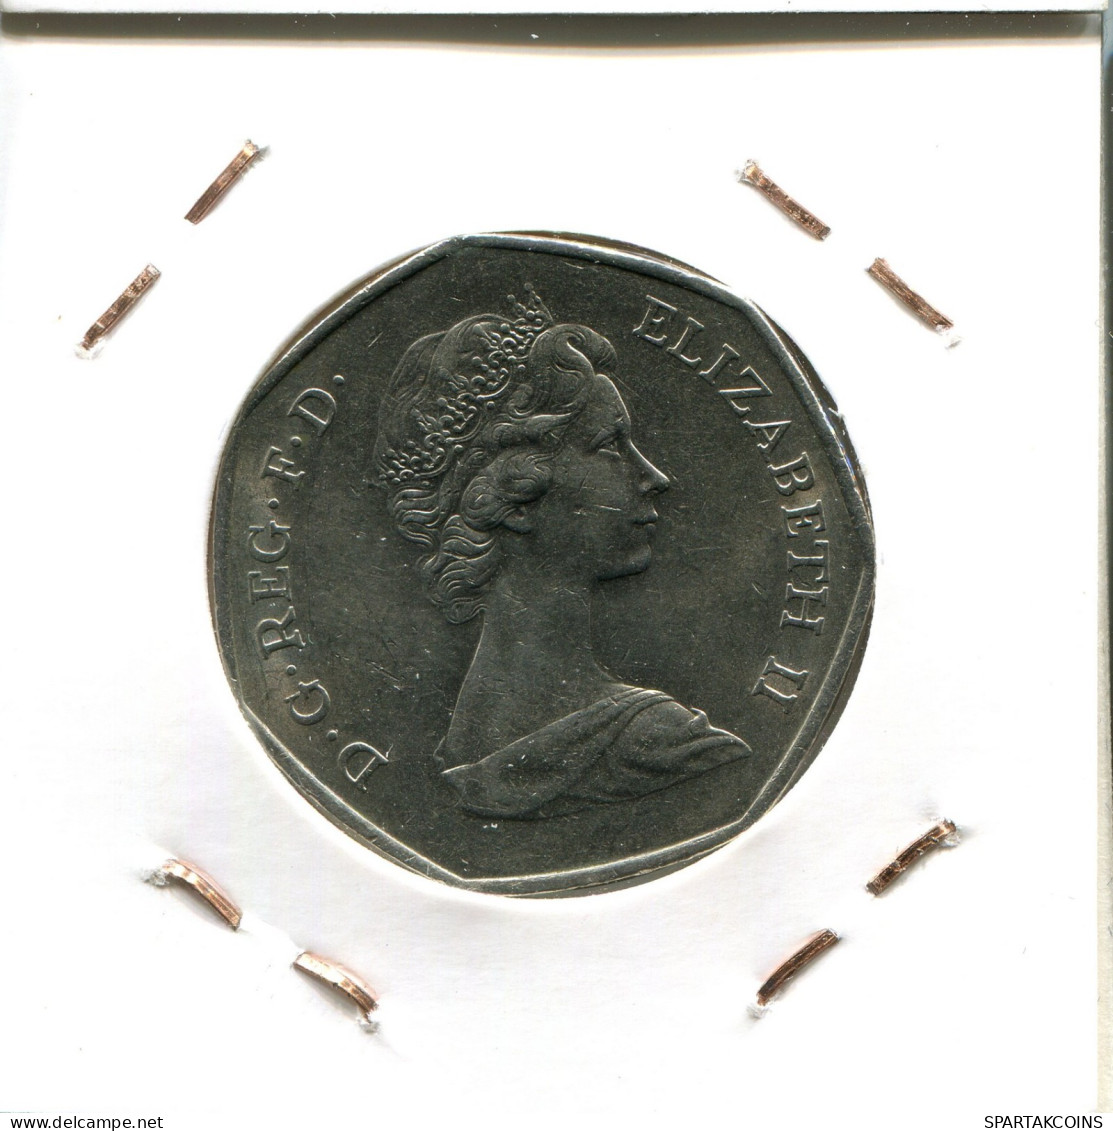 50 PENCE 1973 UK GBAN BRETAÑA GREAT BRITAIN Moneda #AW228.E.A - 50 Pence